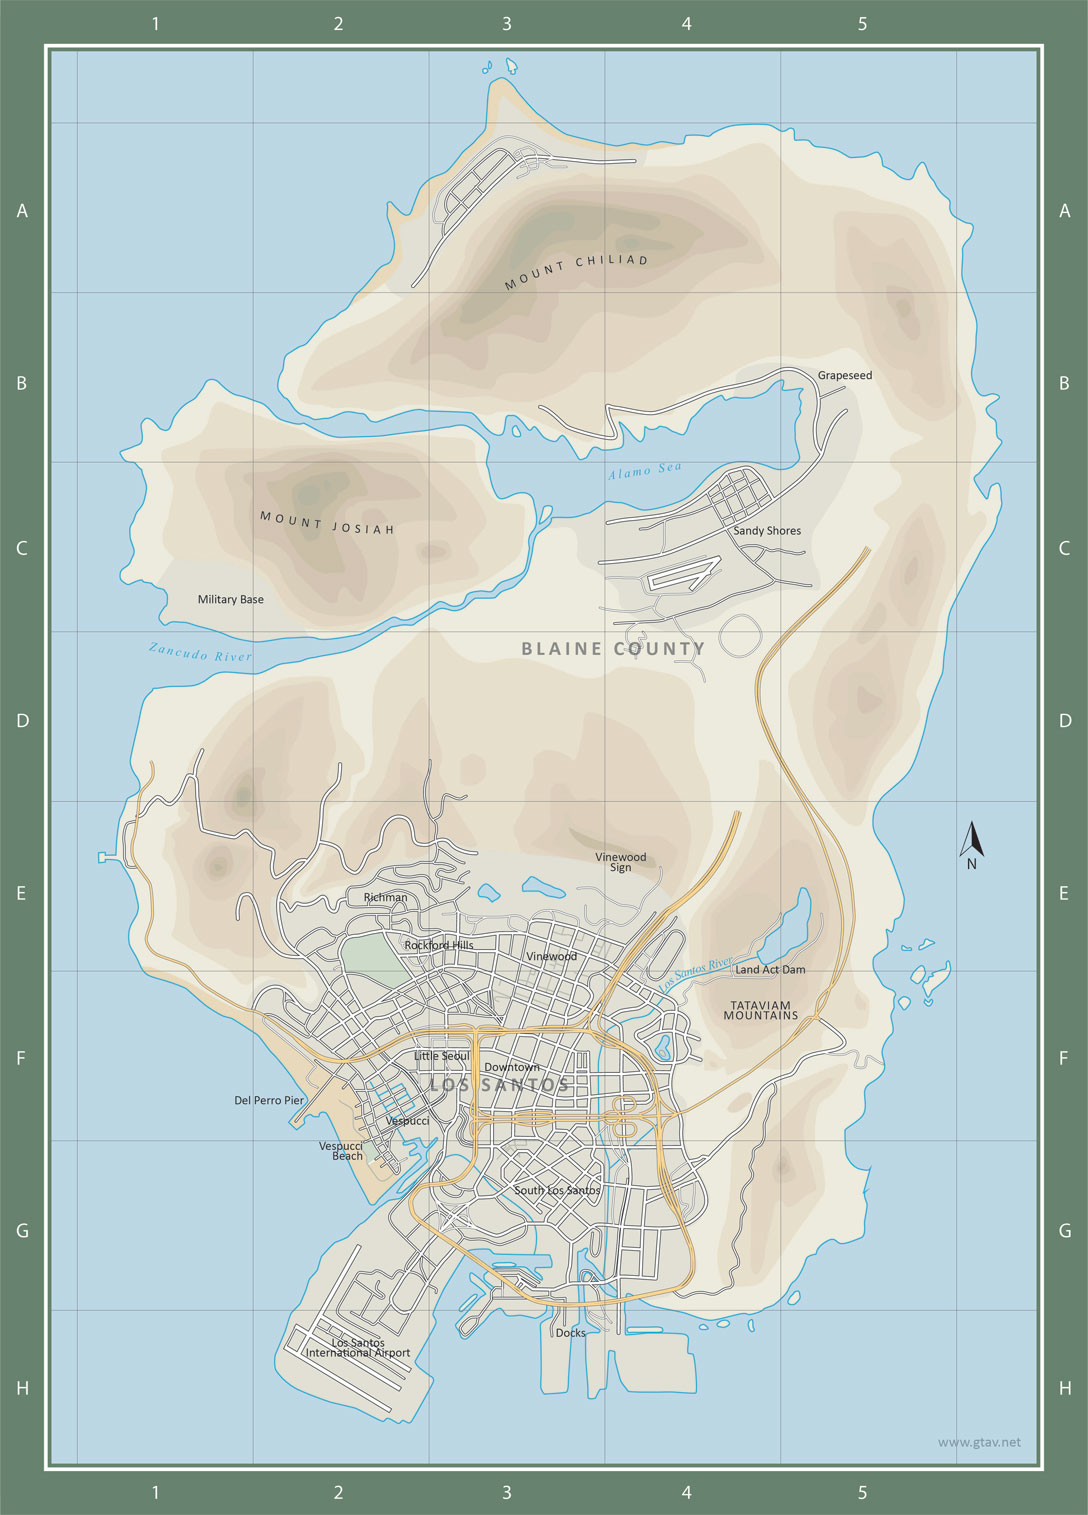 GTA V Map  thegtabible